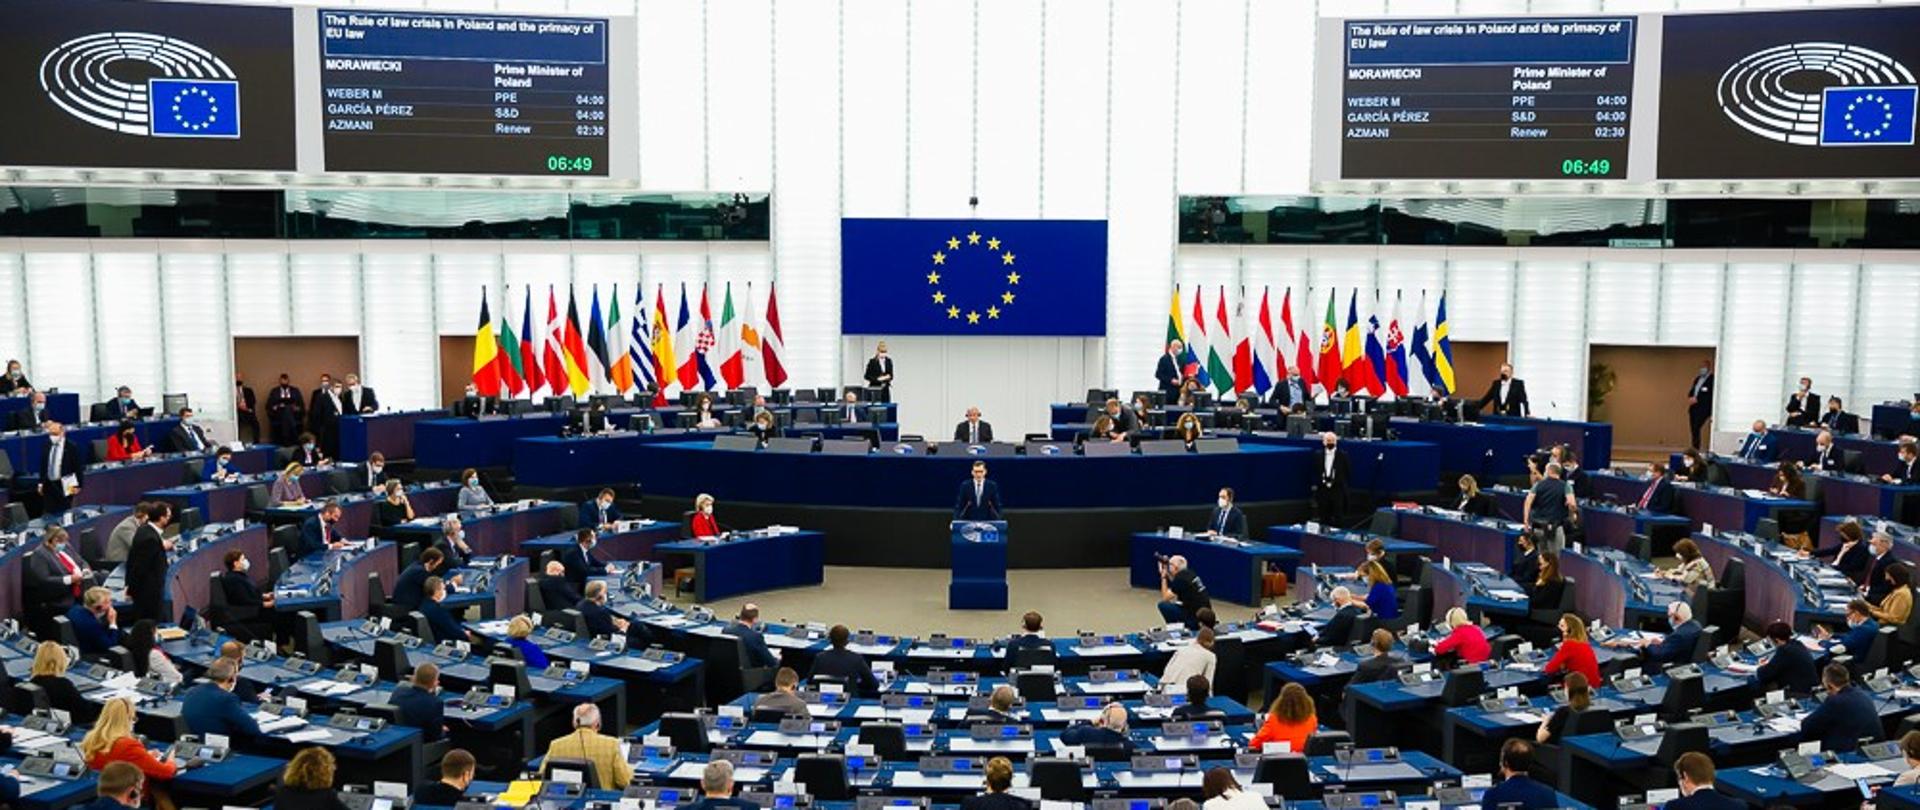 Premier Mateusz Morawiecki podczas przemowy w Parlamencie Europejskim